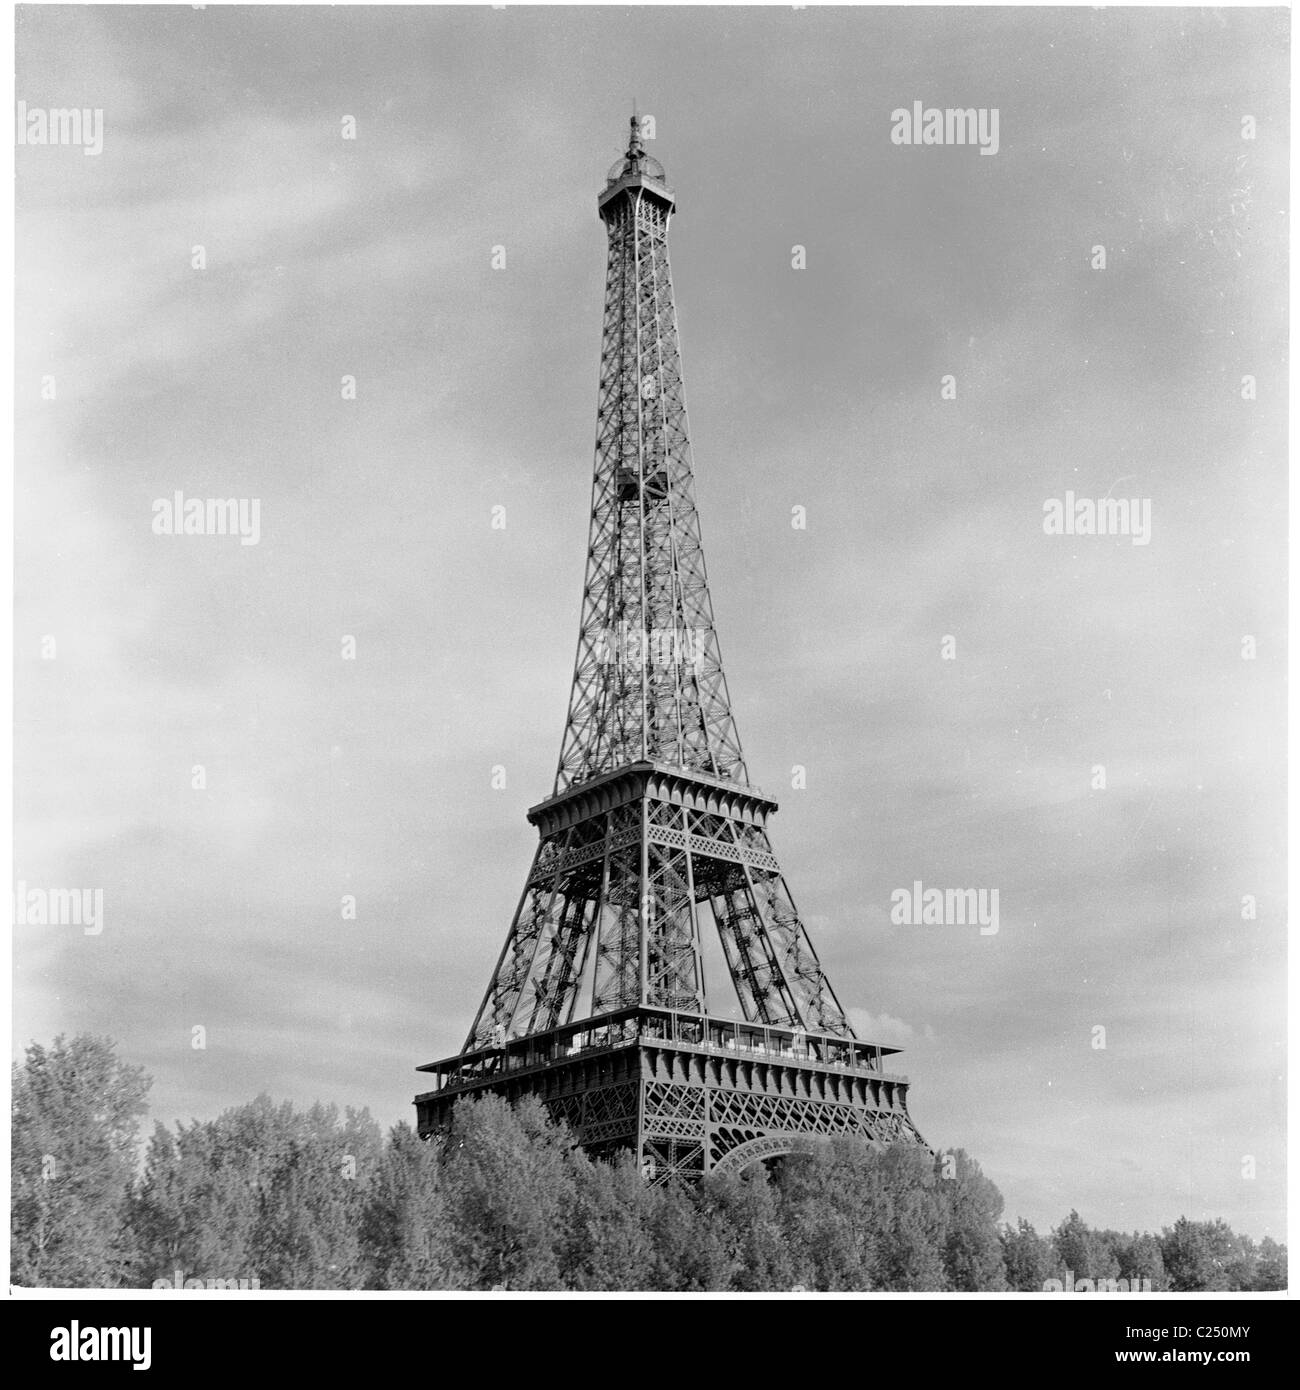 Paris, Frankreich,1950. Der berühmte schmiedeeiserne Gitterturm, der Eiffelturm in diesem historischen Bild von J Allan Cash. Es wurde 1889 eröffnet. Stockfoto